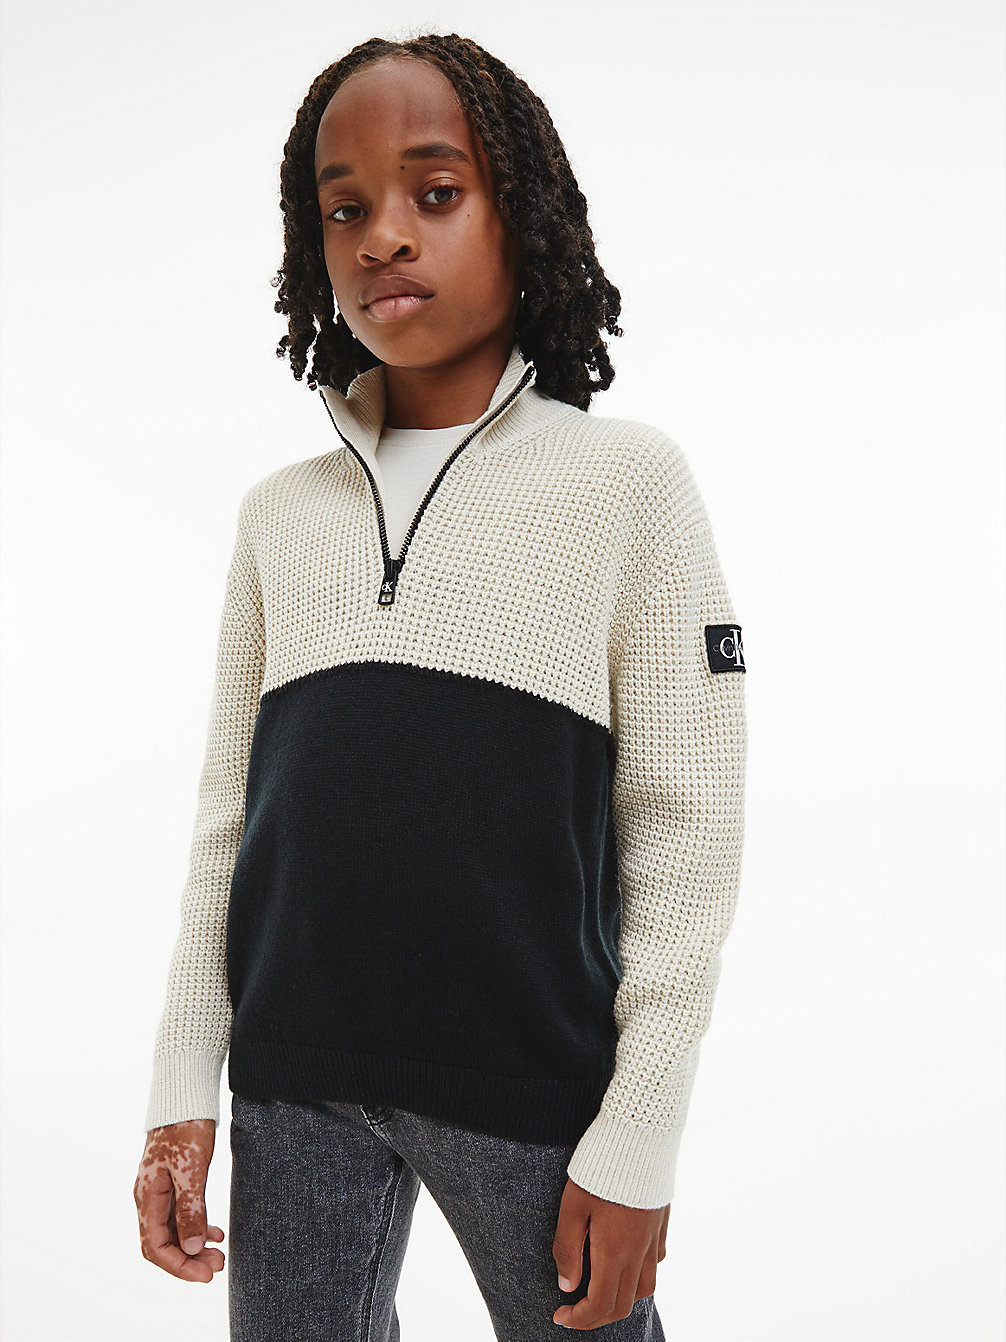 EGGSHELL > Strukturierter Pullover Mit Reißverschlusskragen > undefined boys - Calvin Klein